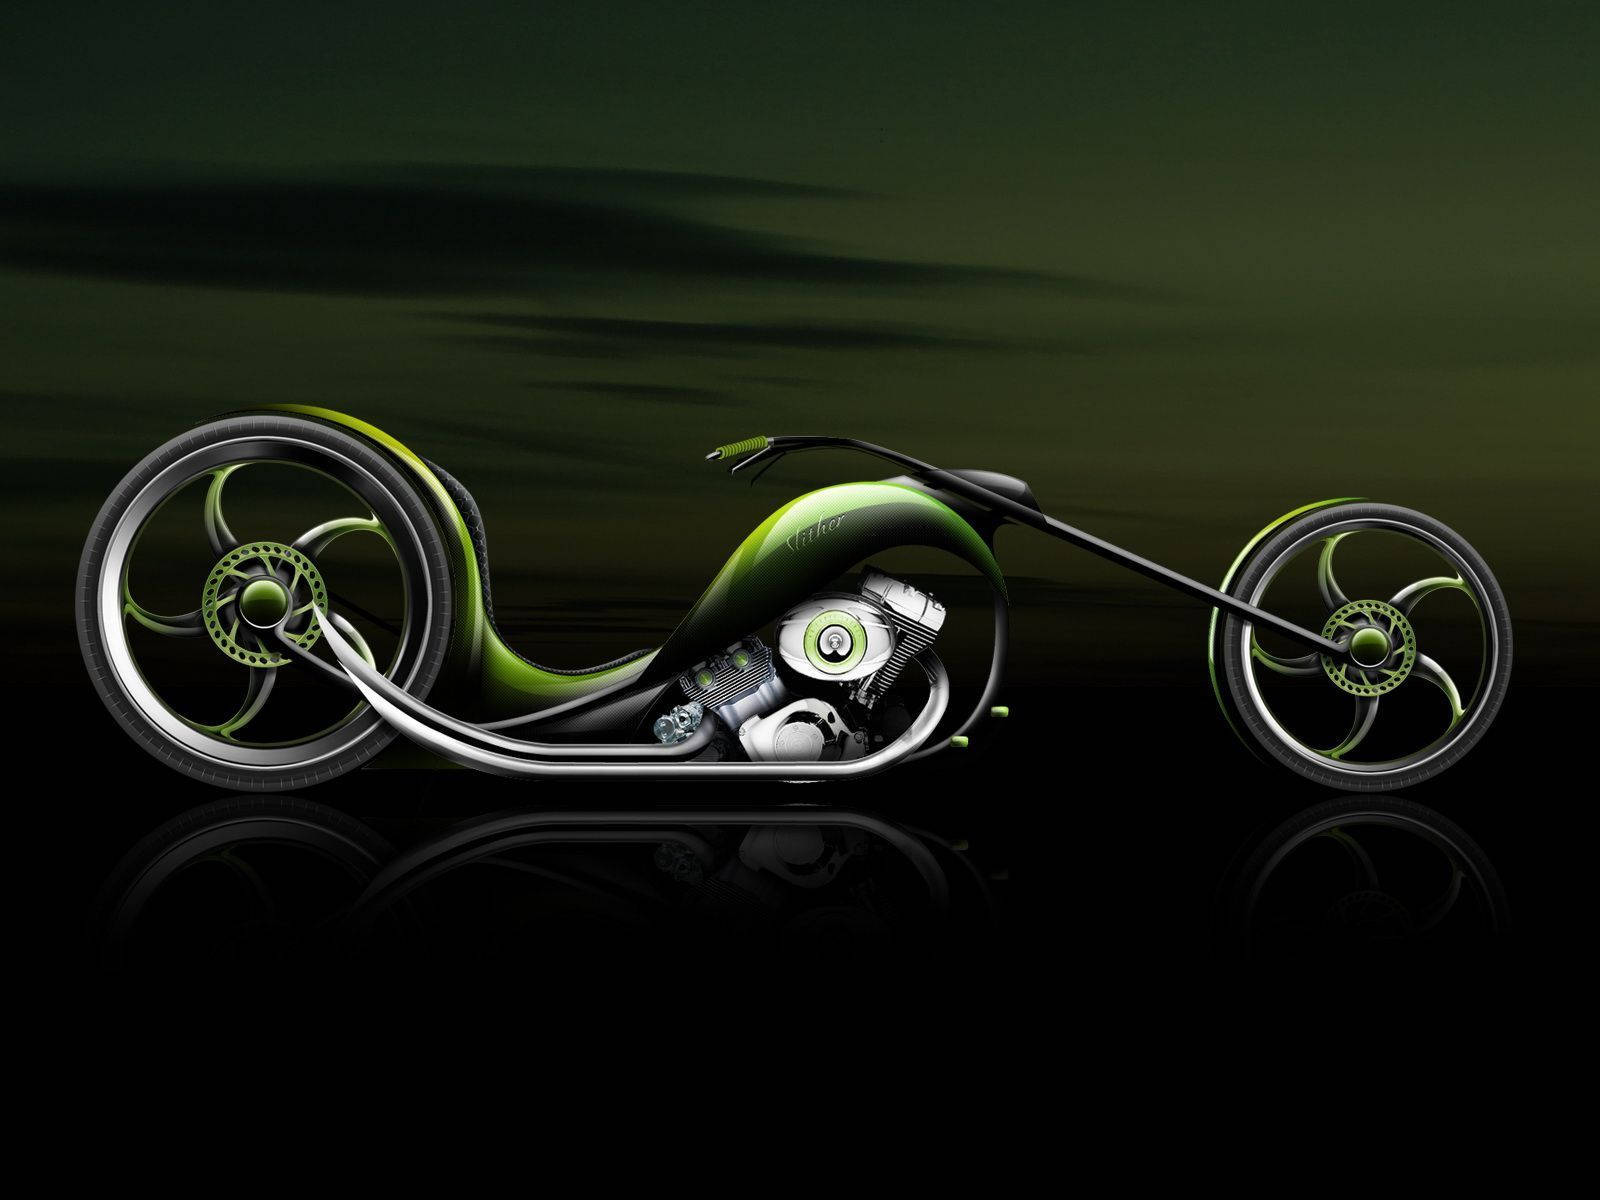 Futuristic Chopper Cool Bike Digital Art Wallpaper